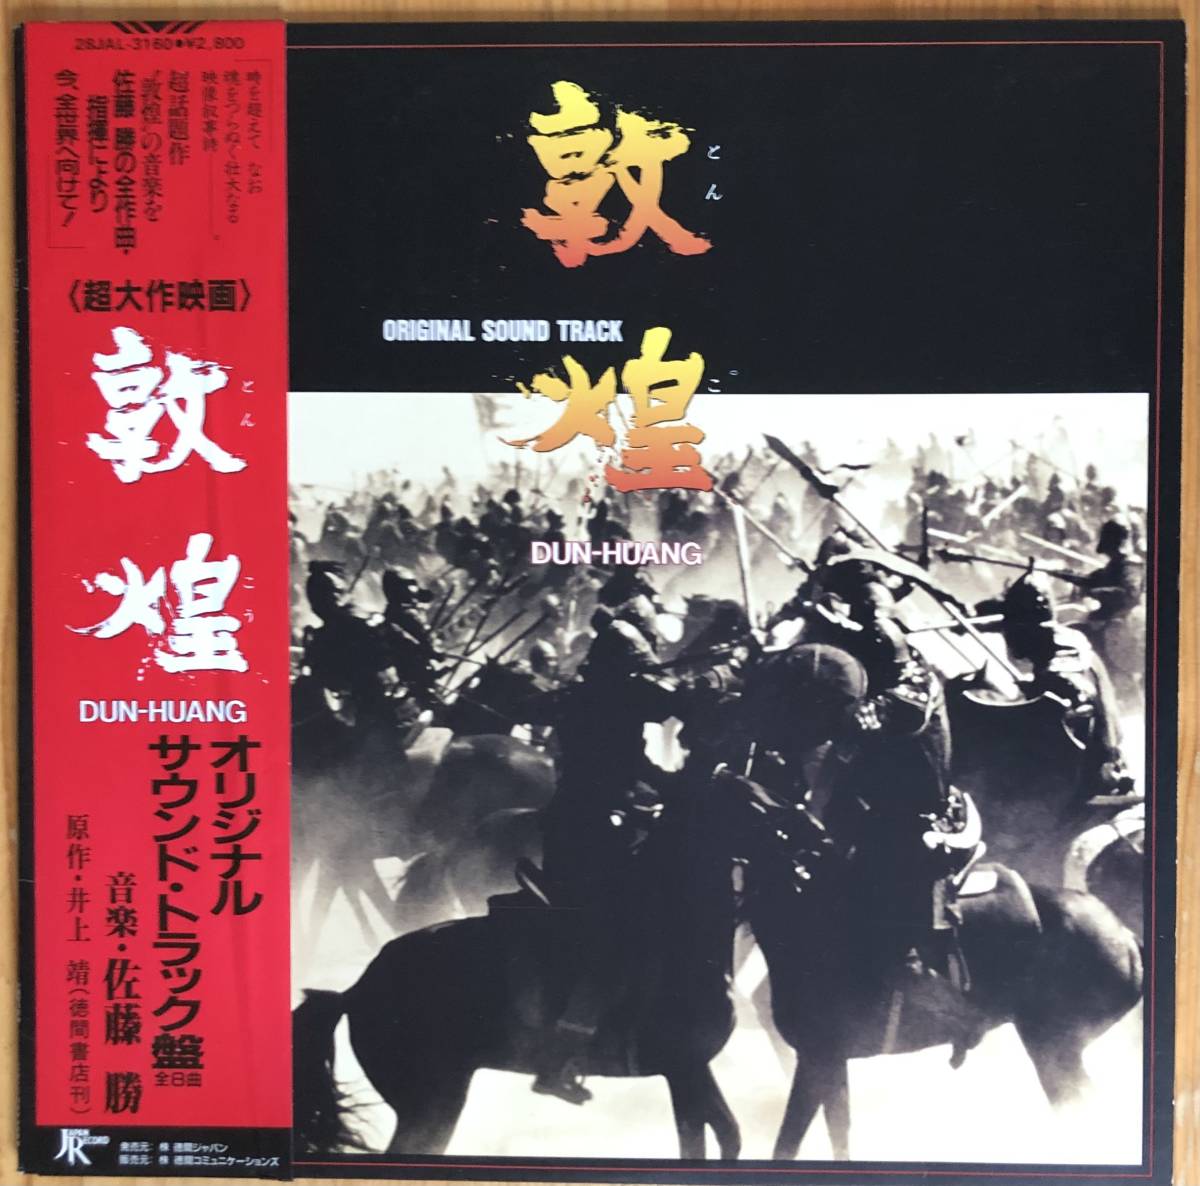 美盤 佐藤勝 / 敦煌 dun-huang オリジナル・サウンドトラック 帯付き LP レコード 28JAL-3160 O.S.T